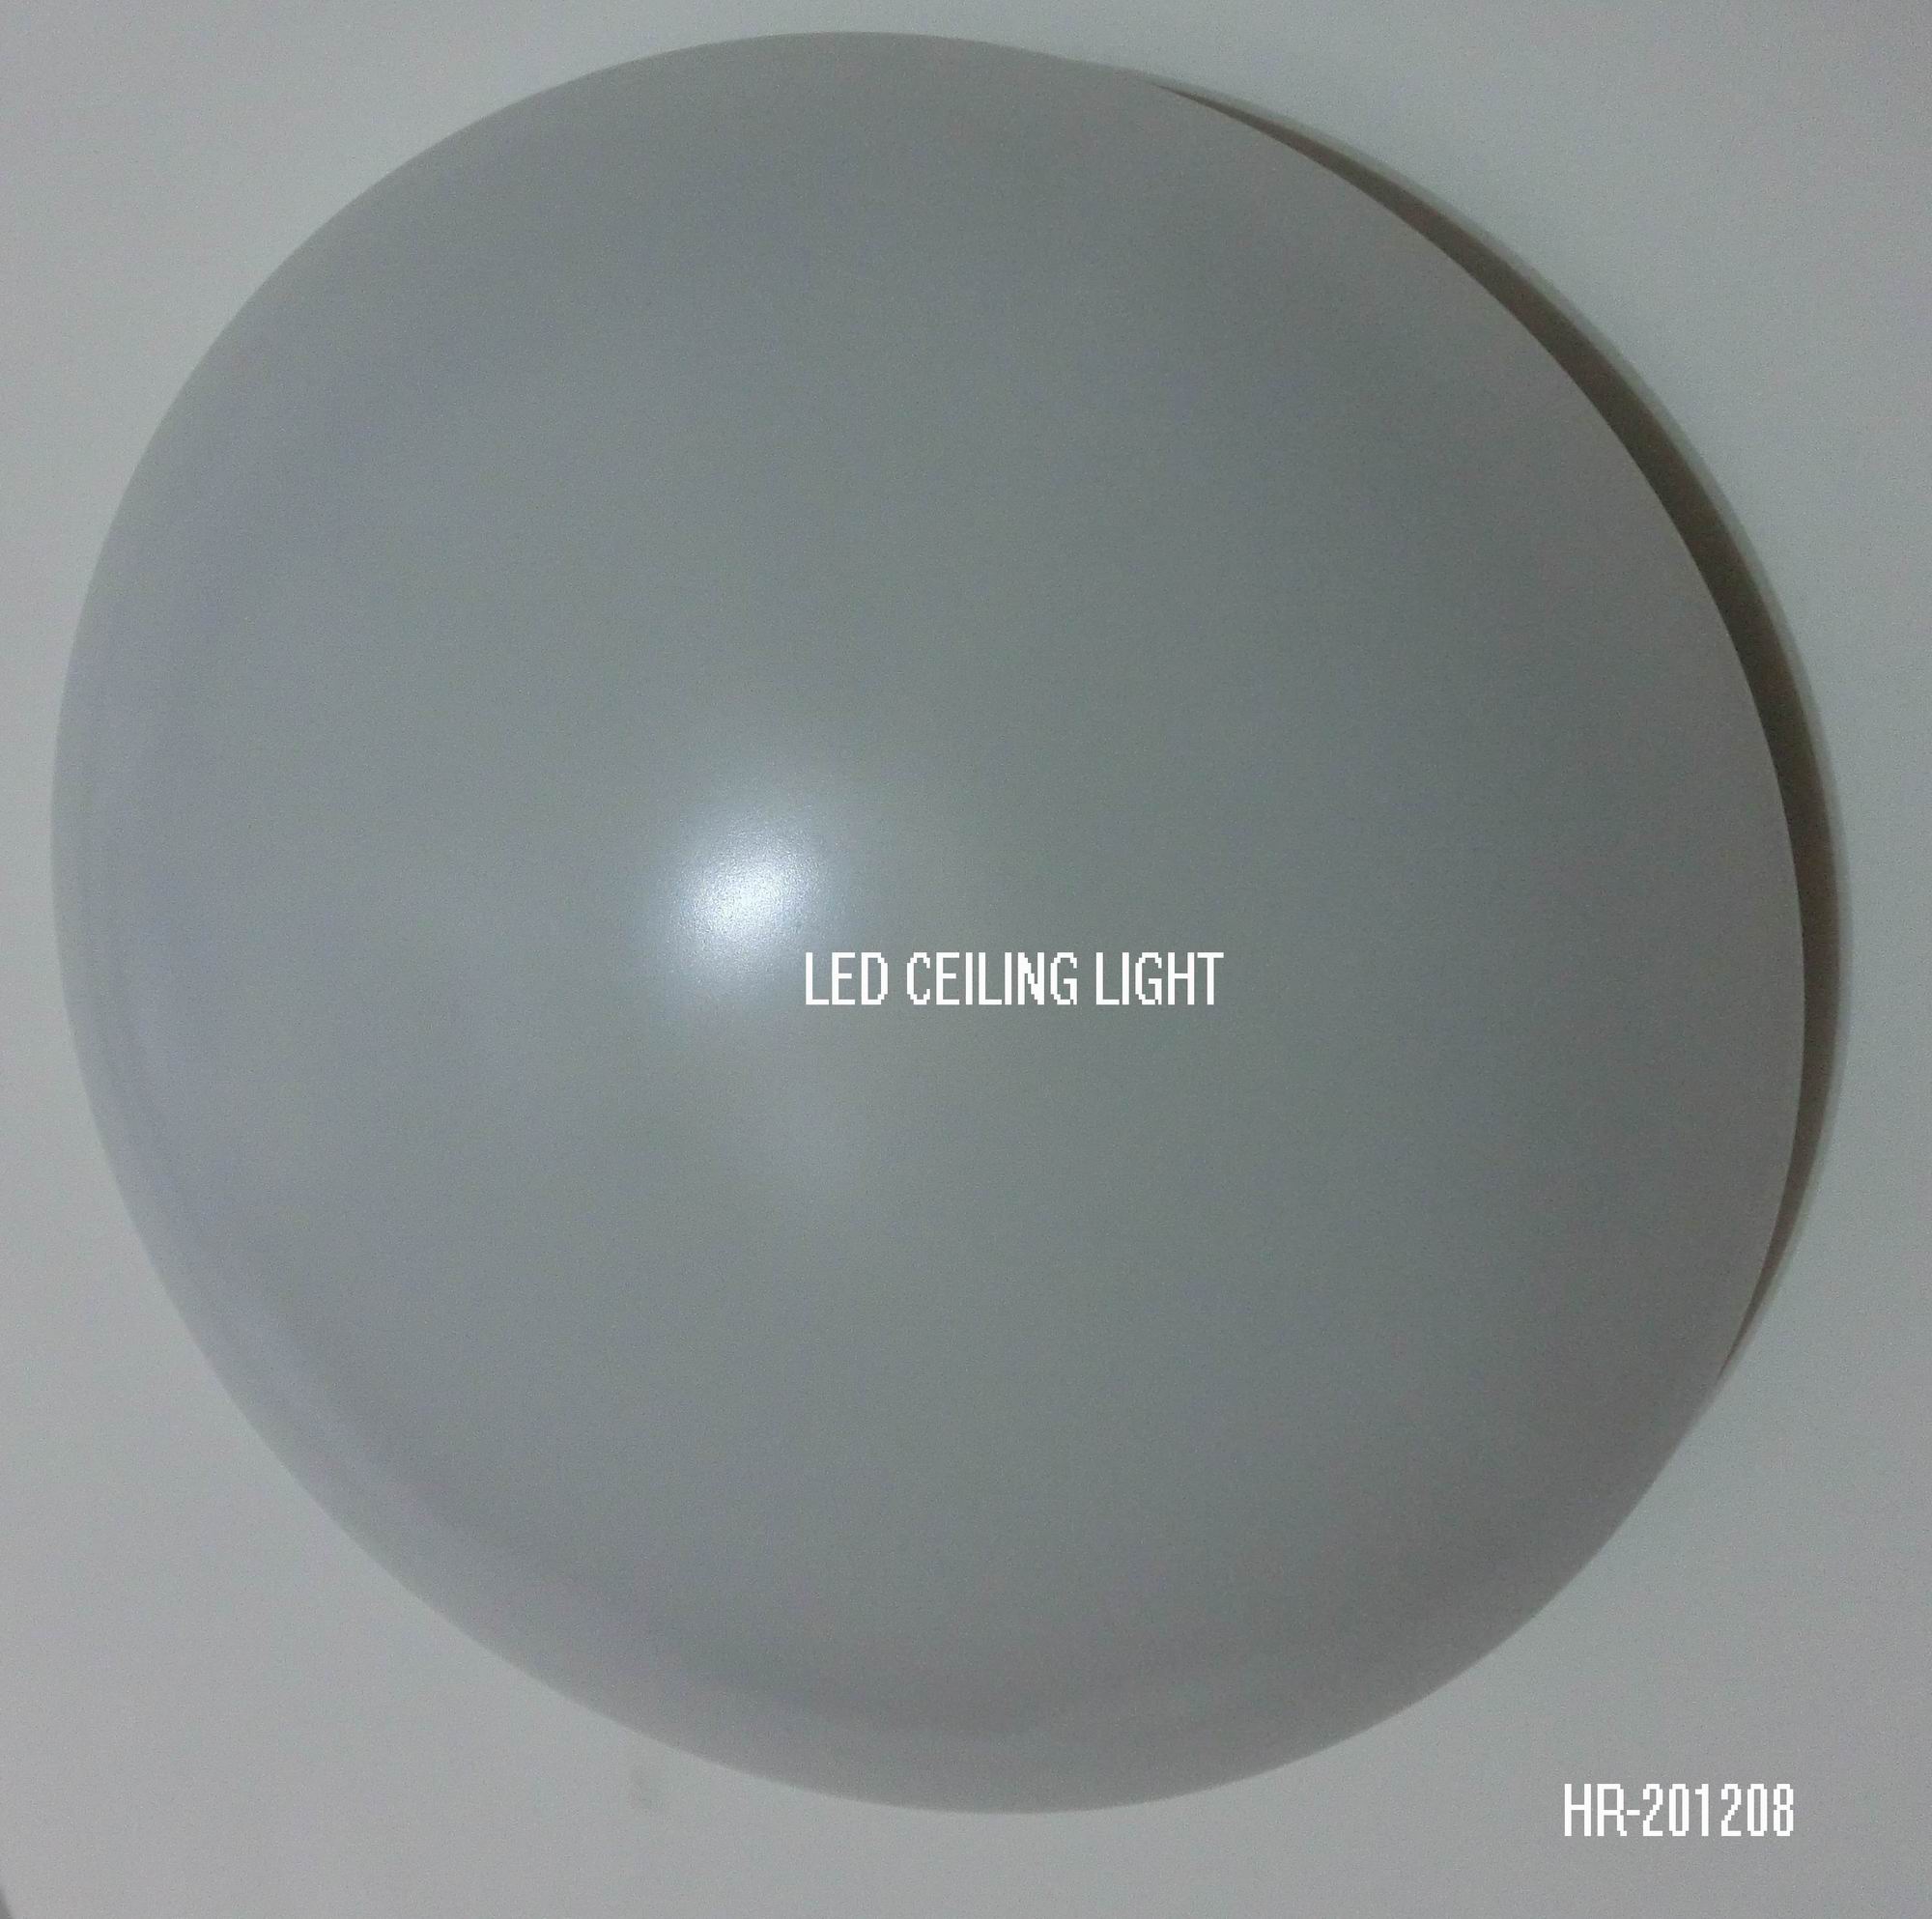 LED CEILING LIGHT HR-201208